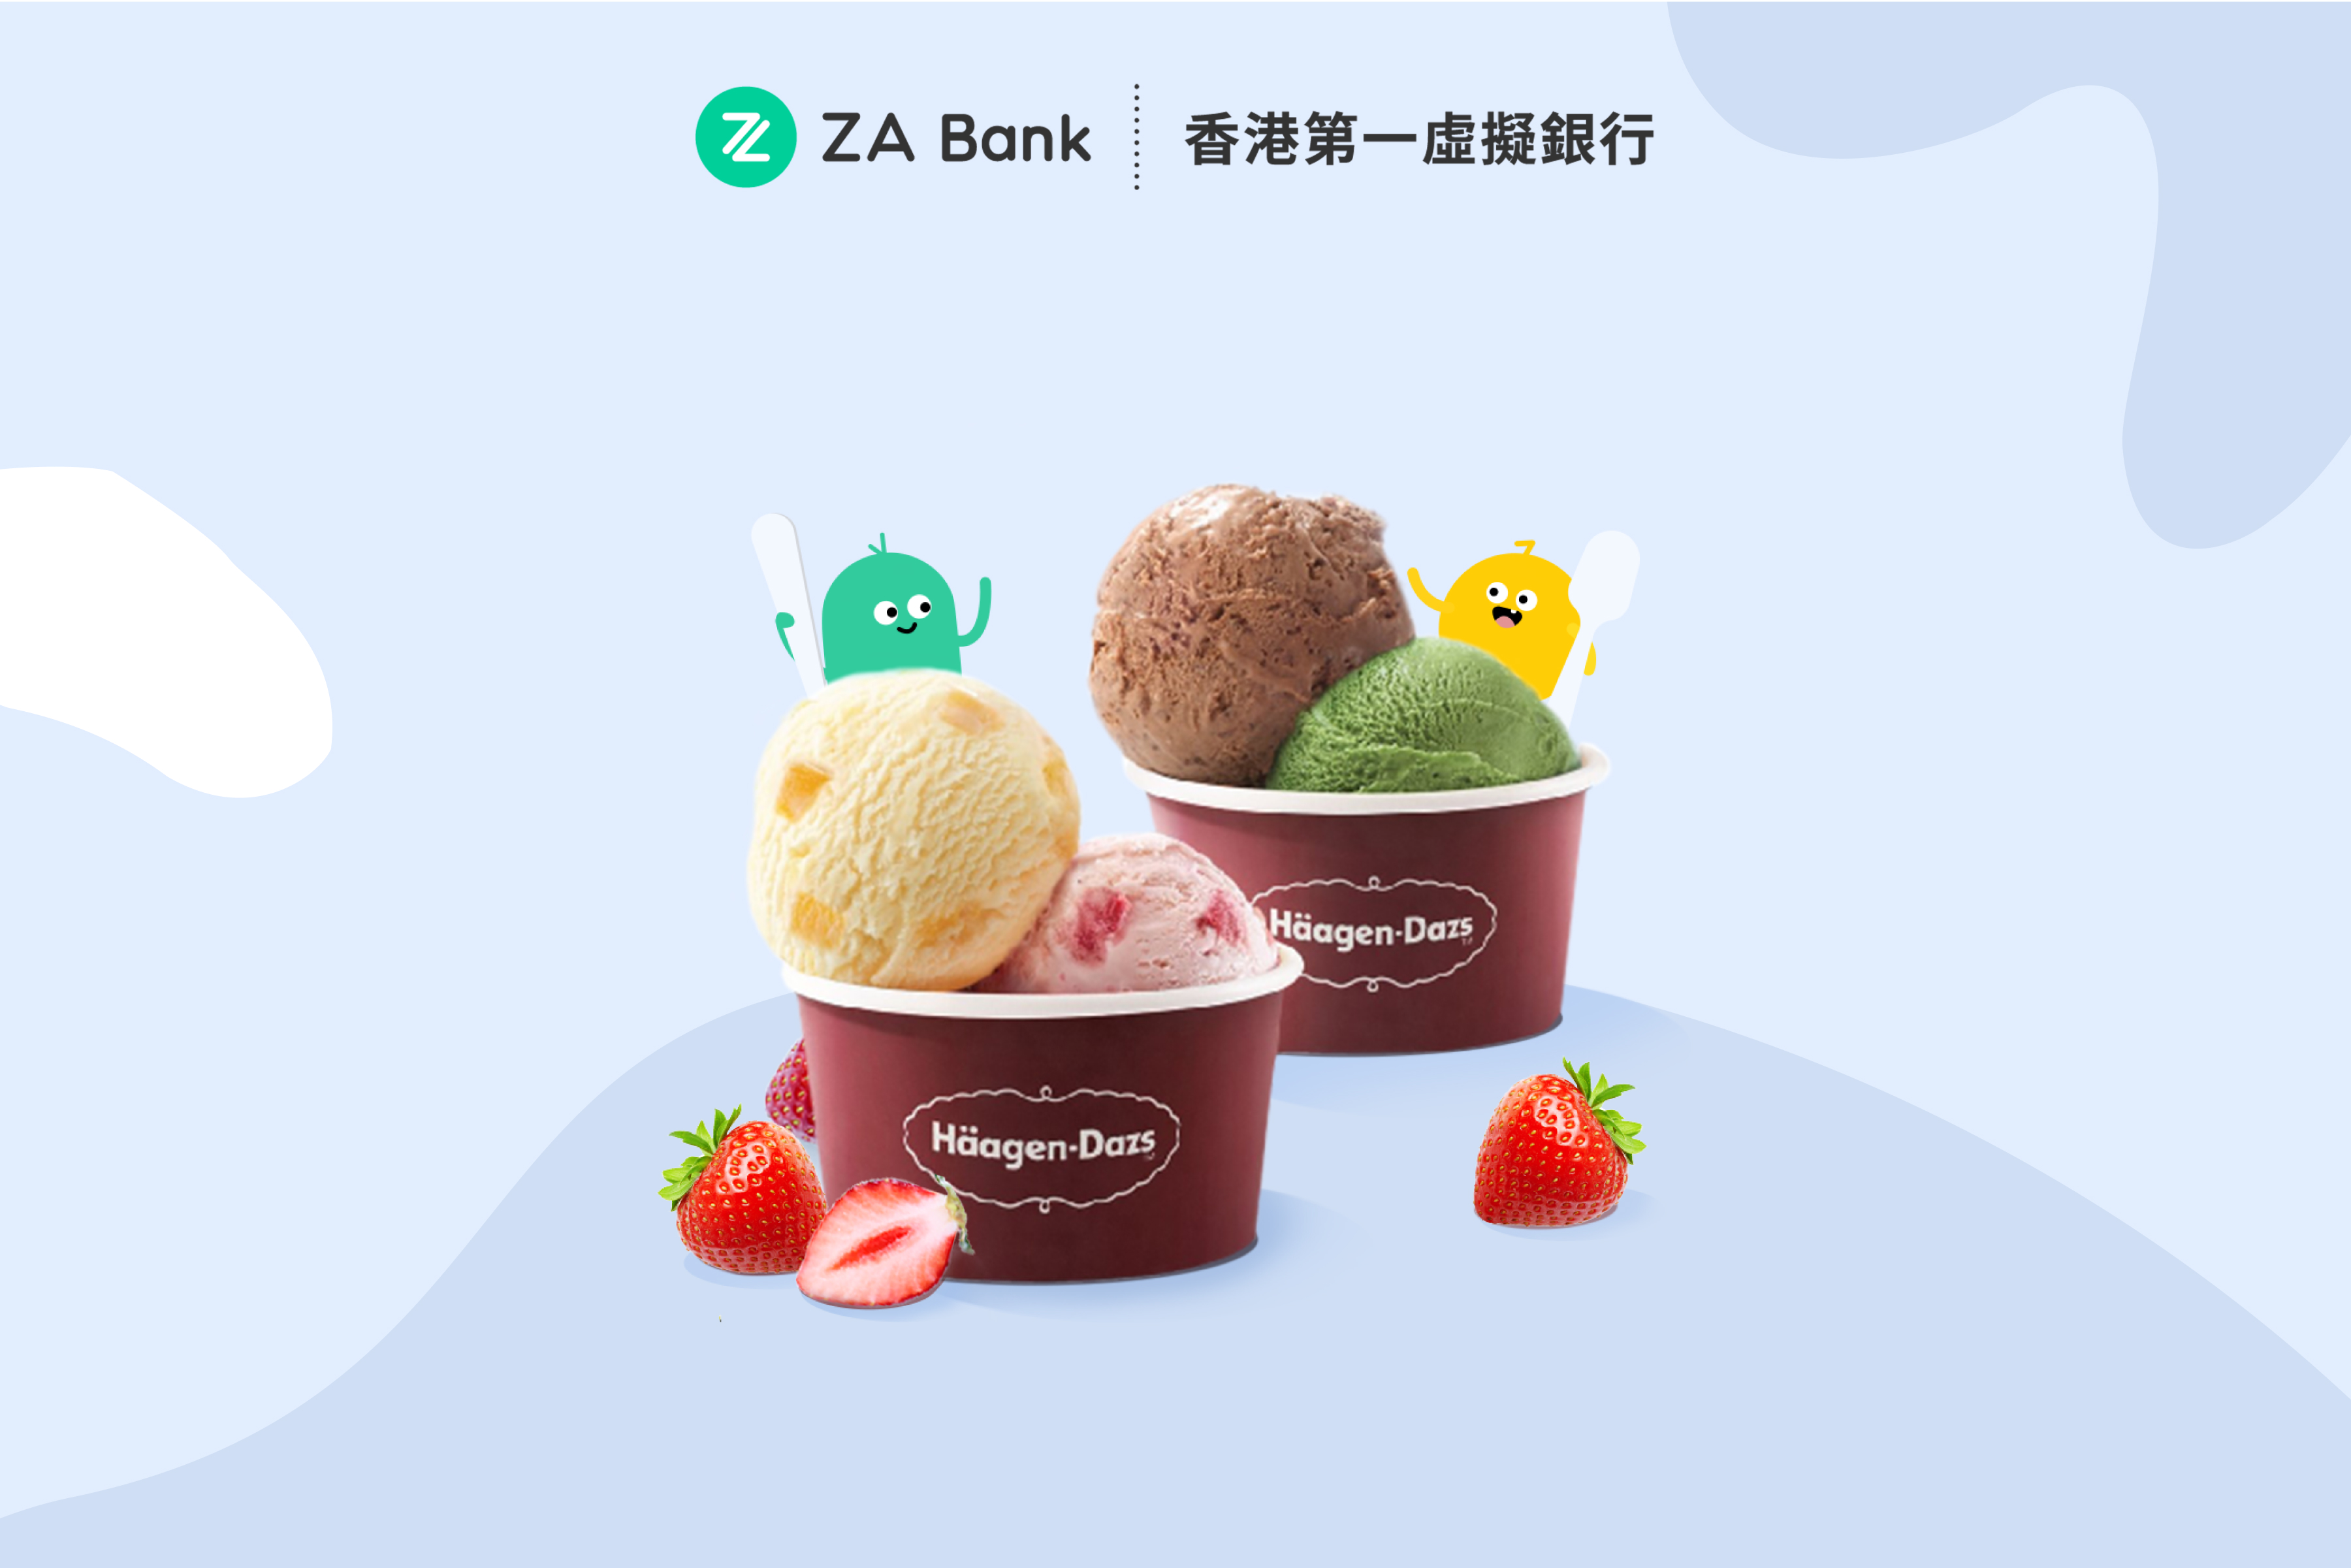 【ZA Bank】Häagen-Dazs™ 優惠 | 10.16 開始！雙球雪糕買1送1+雪糕蛋糕88折